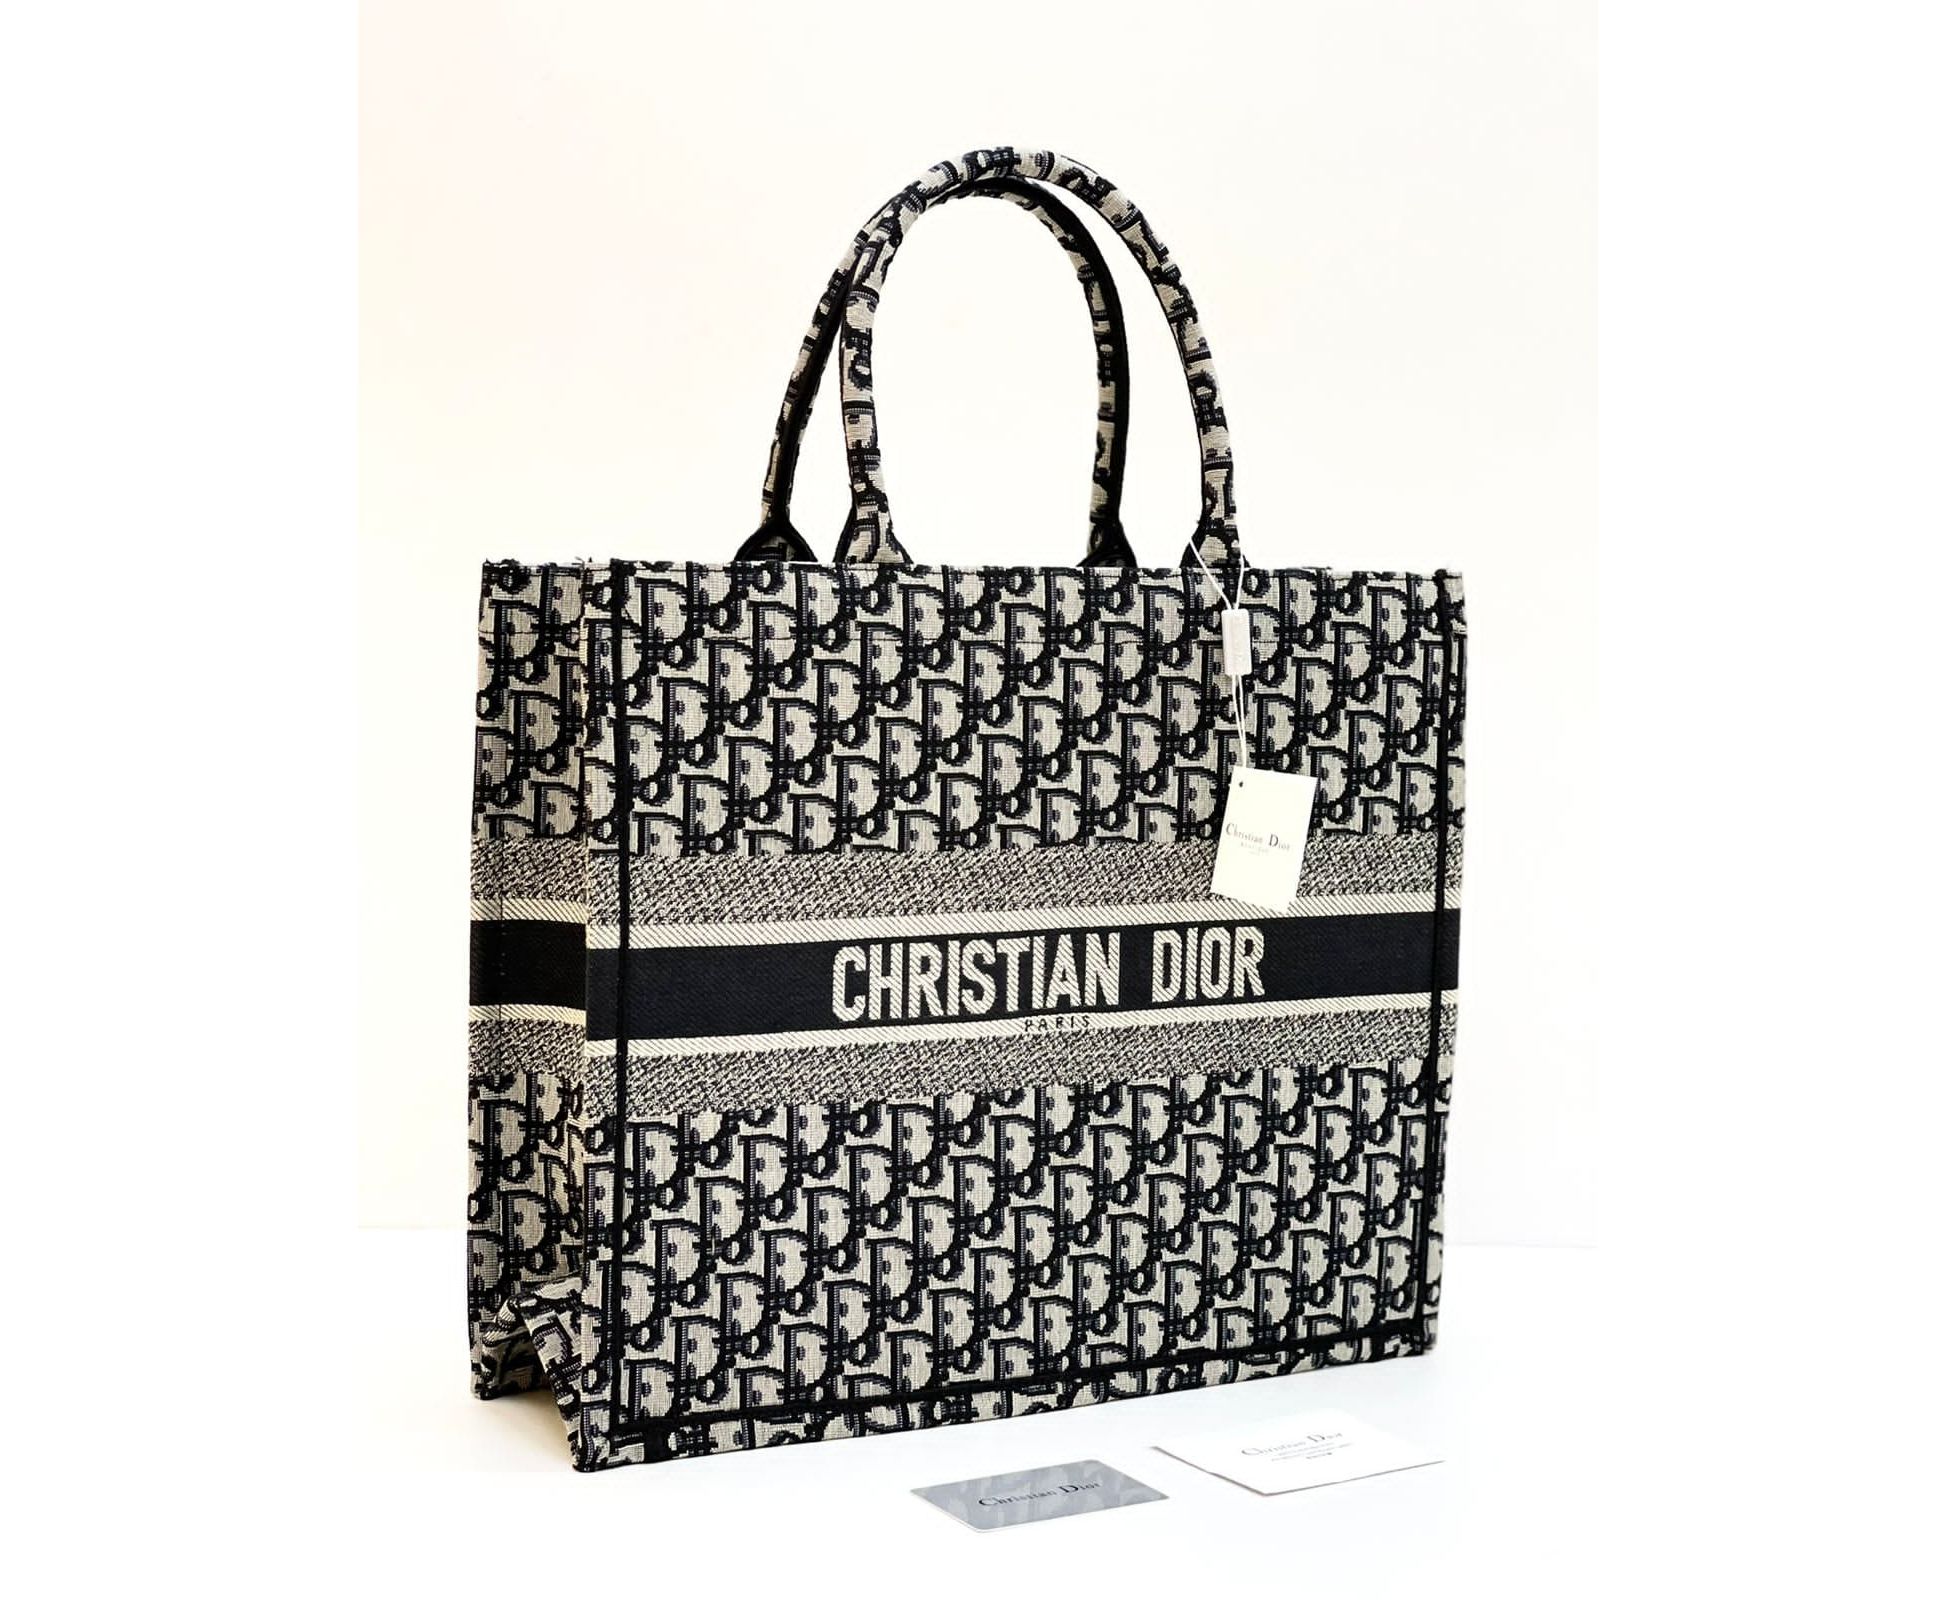 Женская кожаная сумка Christian Dior Saddle синяя 25207  купить в Москве  с доставкой по РФ